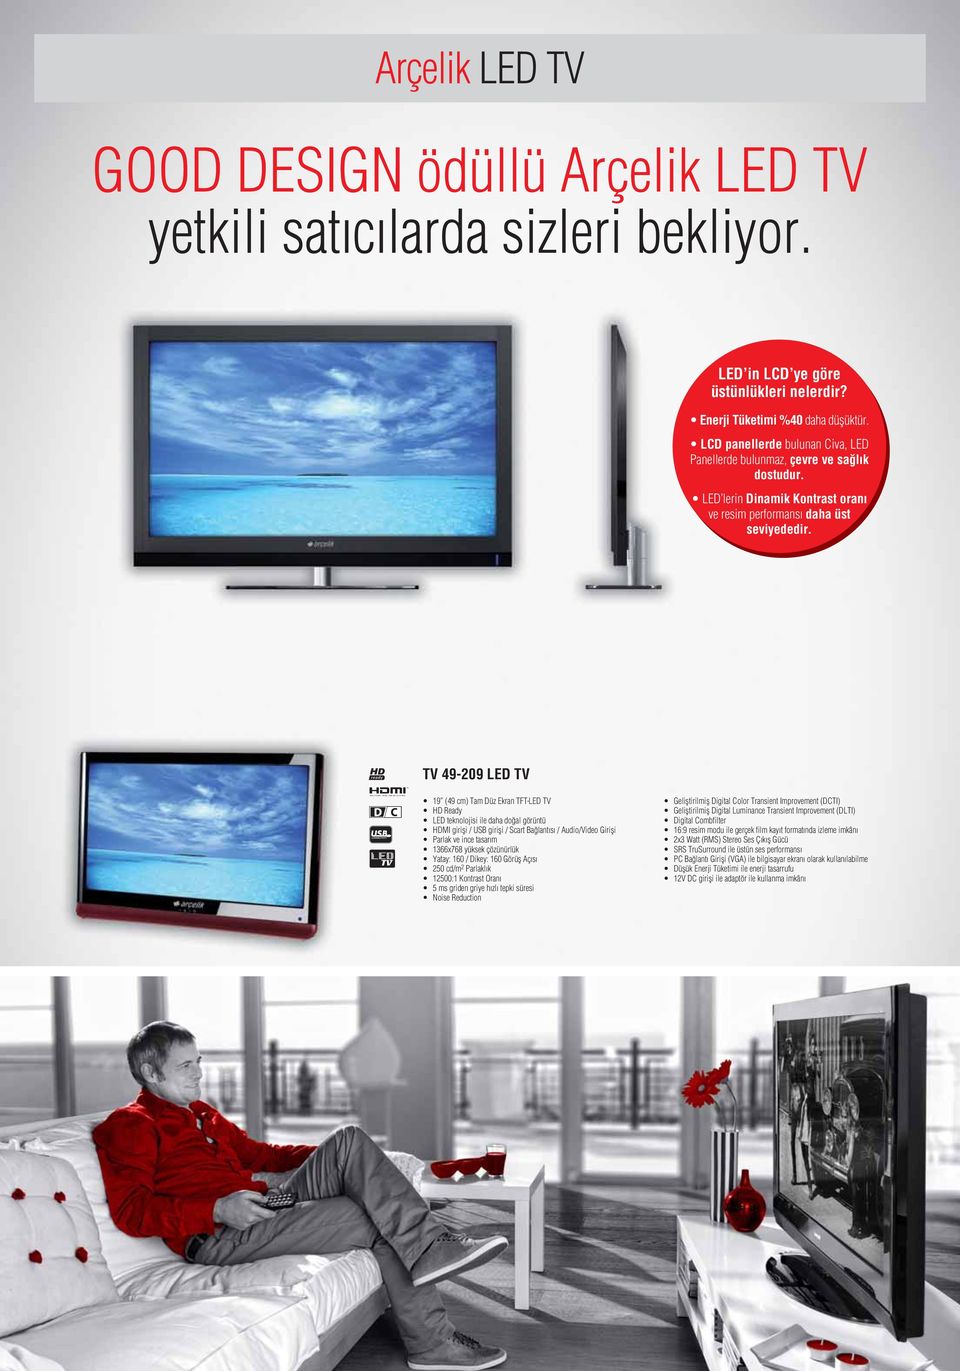 TV 49-209 LED TV 19 (49 cm) Tam Düz Ekran TFT-LED TV HD Ready LED teknolojisi ile daha doğal görüntü HDMI girişi / USB girişi / Scart Bağlantısı / Audio/Video Girişi Parlak ve ince tasarım 1366x768